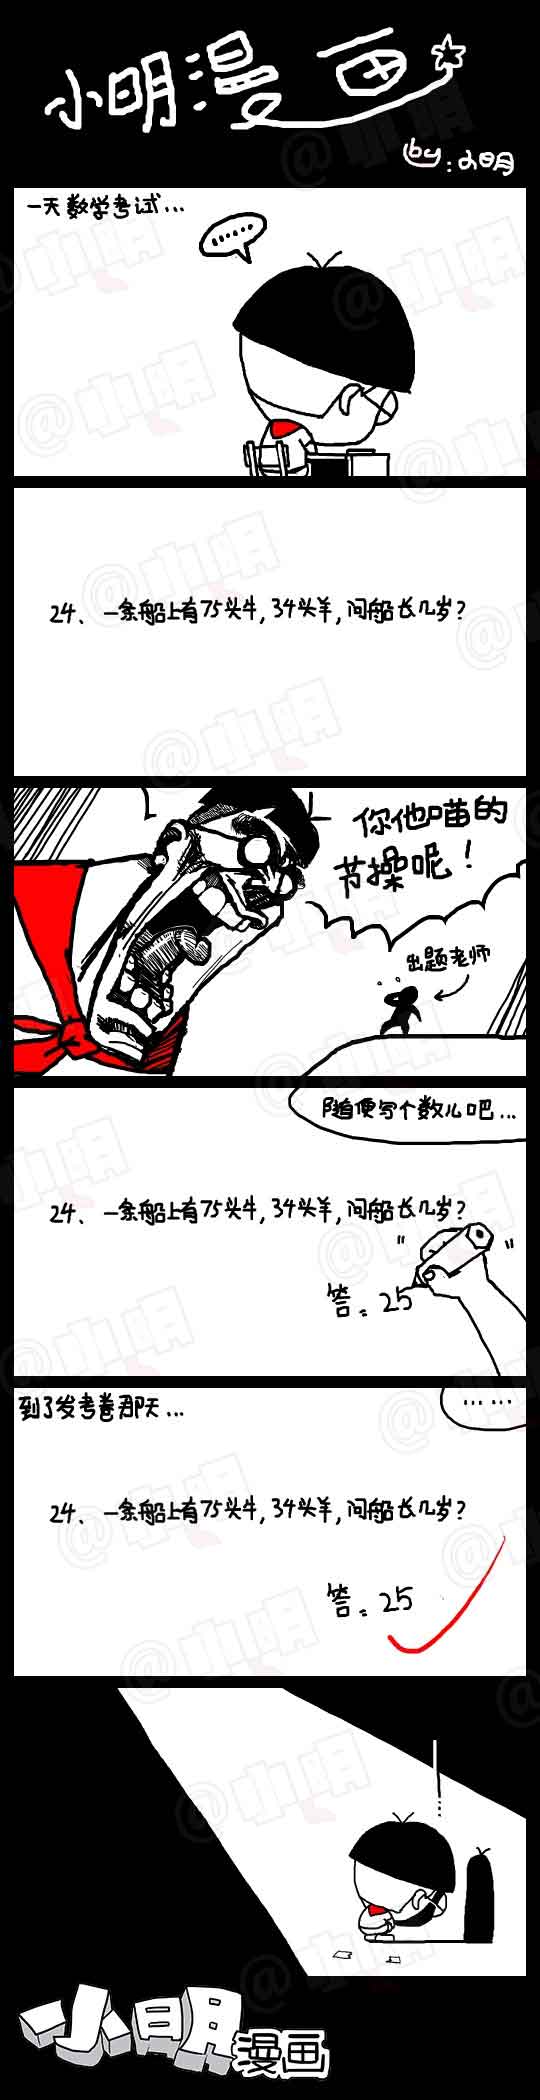 小明系列漫画：船长几岁